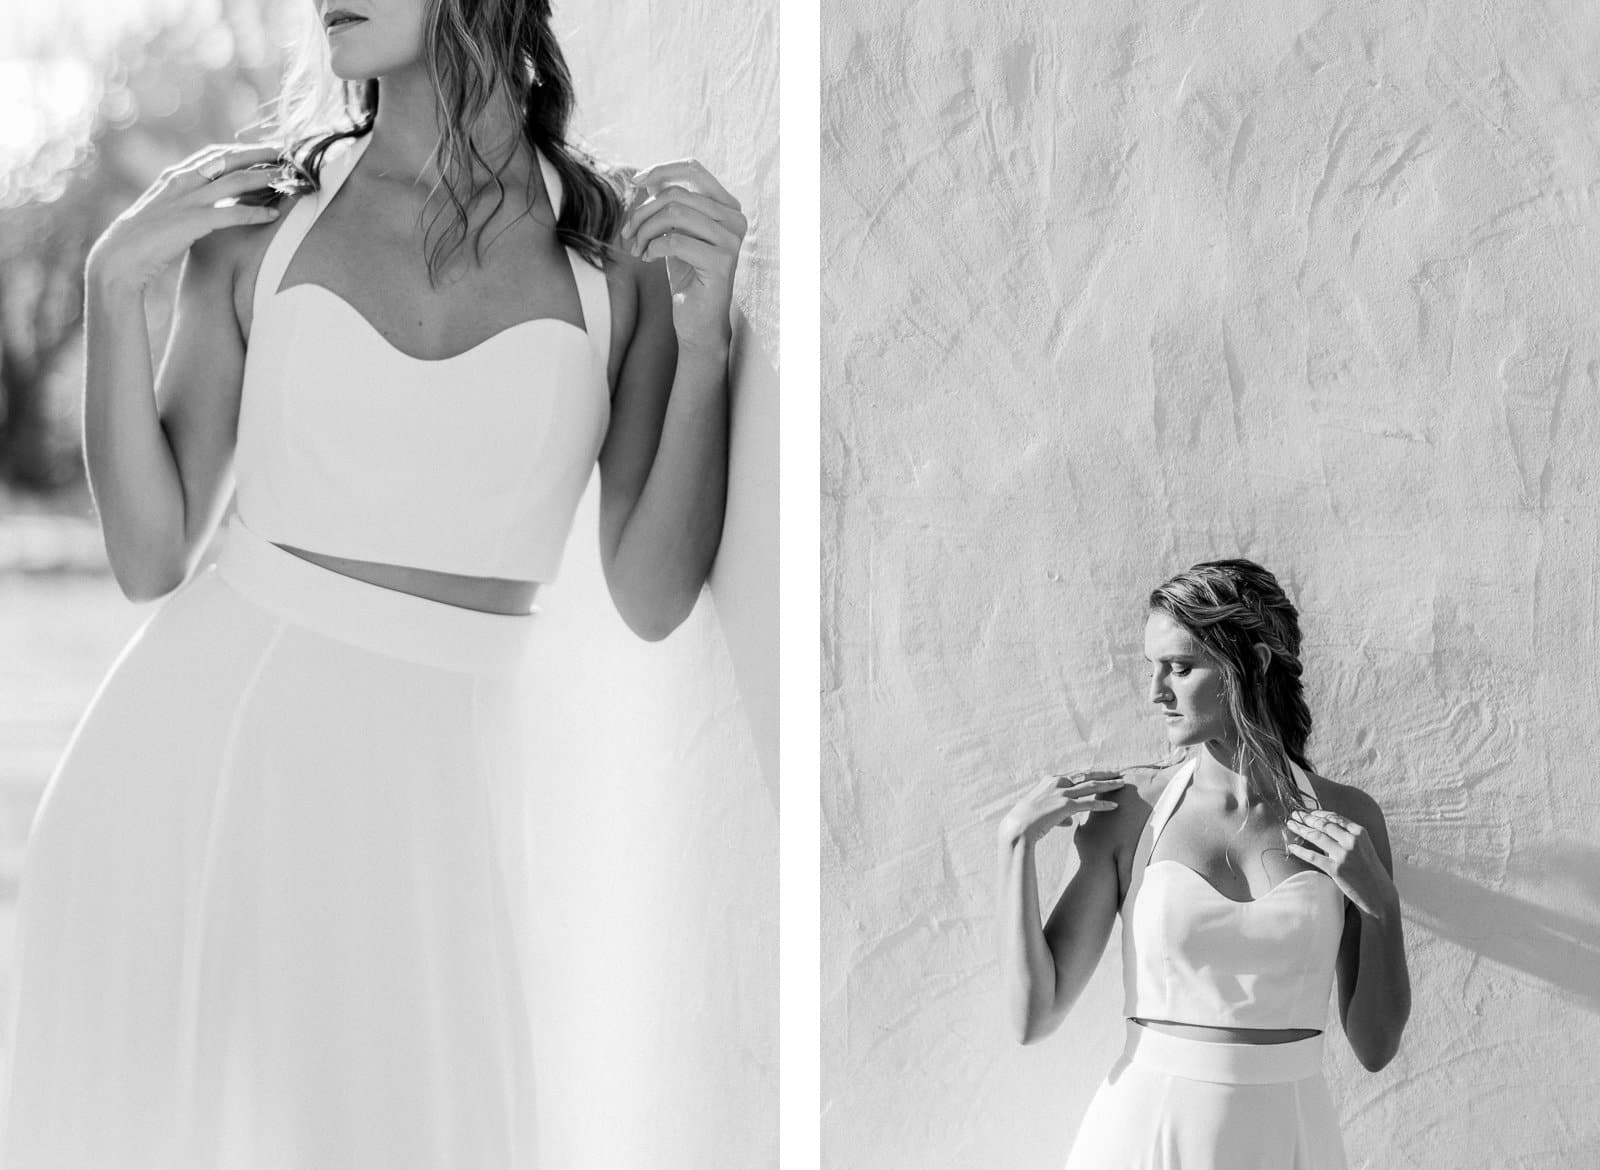 Photographie de Mathieu Dété, photographe de mariage, de mode et de couple à Saint-Leu sur l'île de la Réunion 974, présentant Emma en robe de mariée en noir et blanc